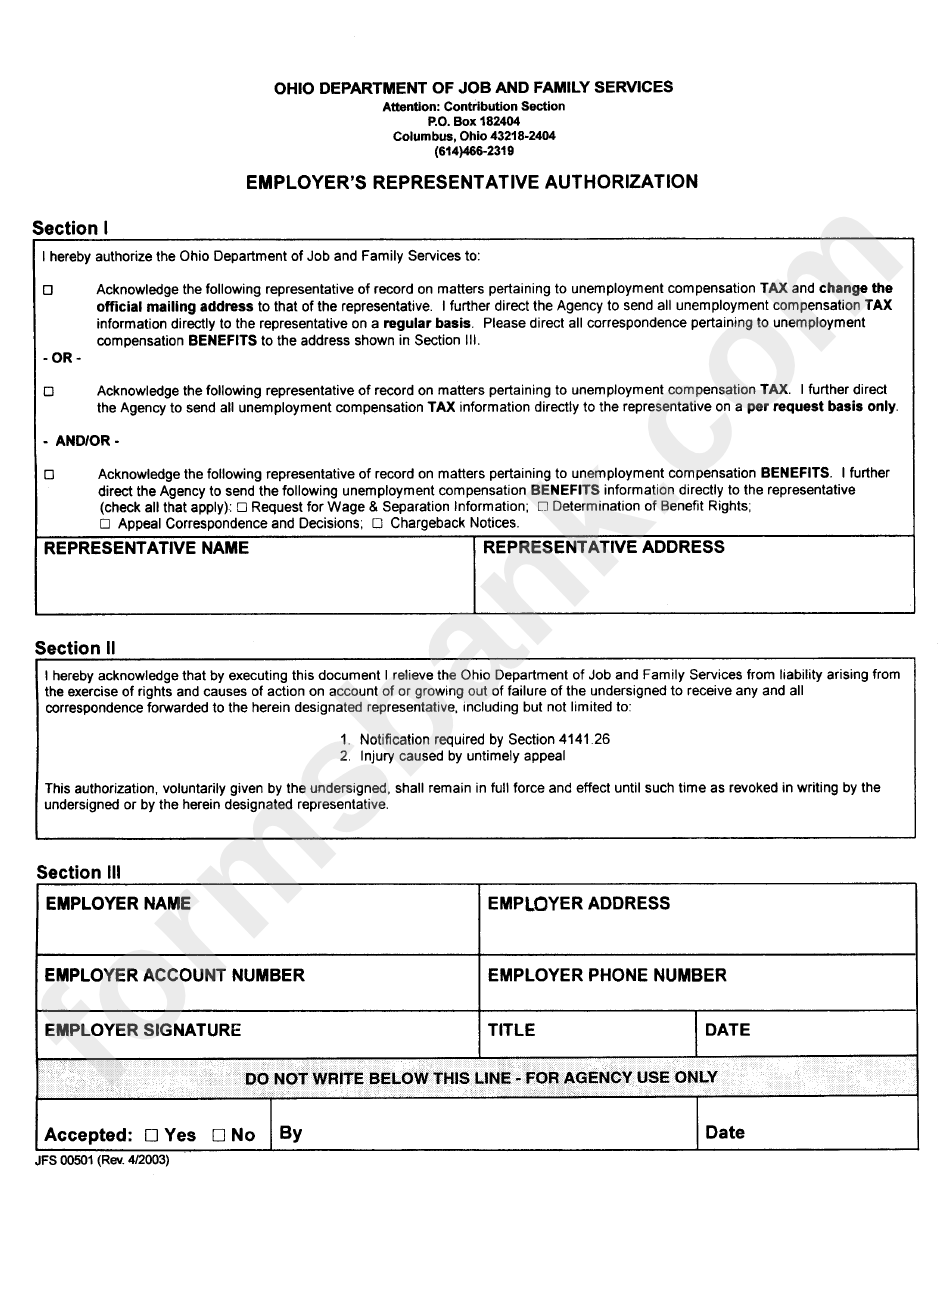 Form Jfs 00501 - Employer